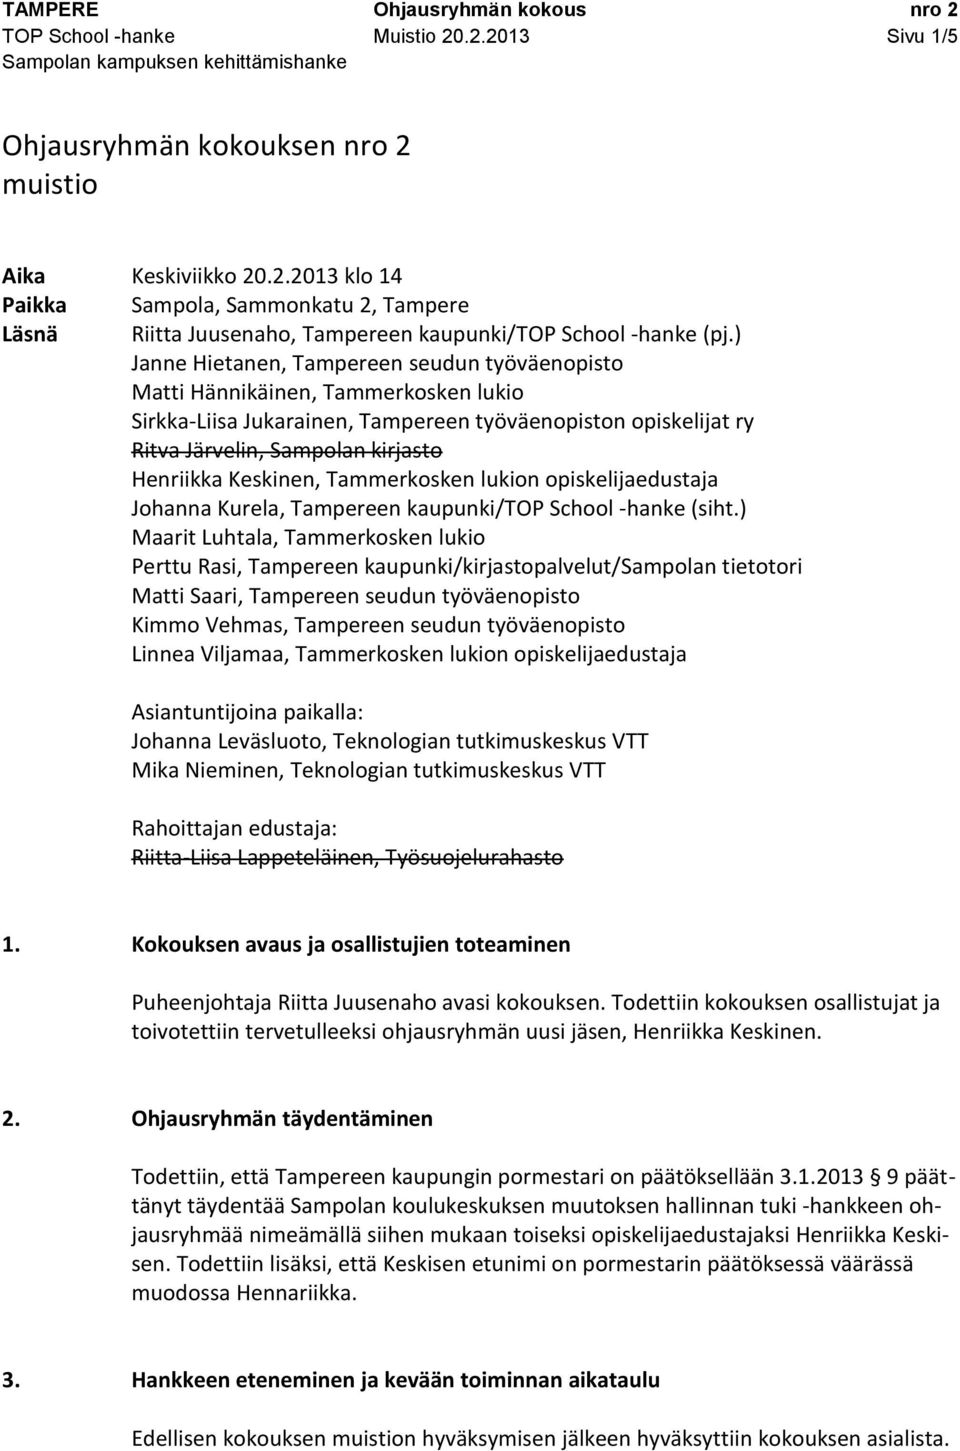 Keskinen, Tammerkosken lukion opiskelijaedustaja Johanna Kurela, Tampereen kaupunki/top School -hanke (siht.